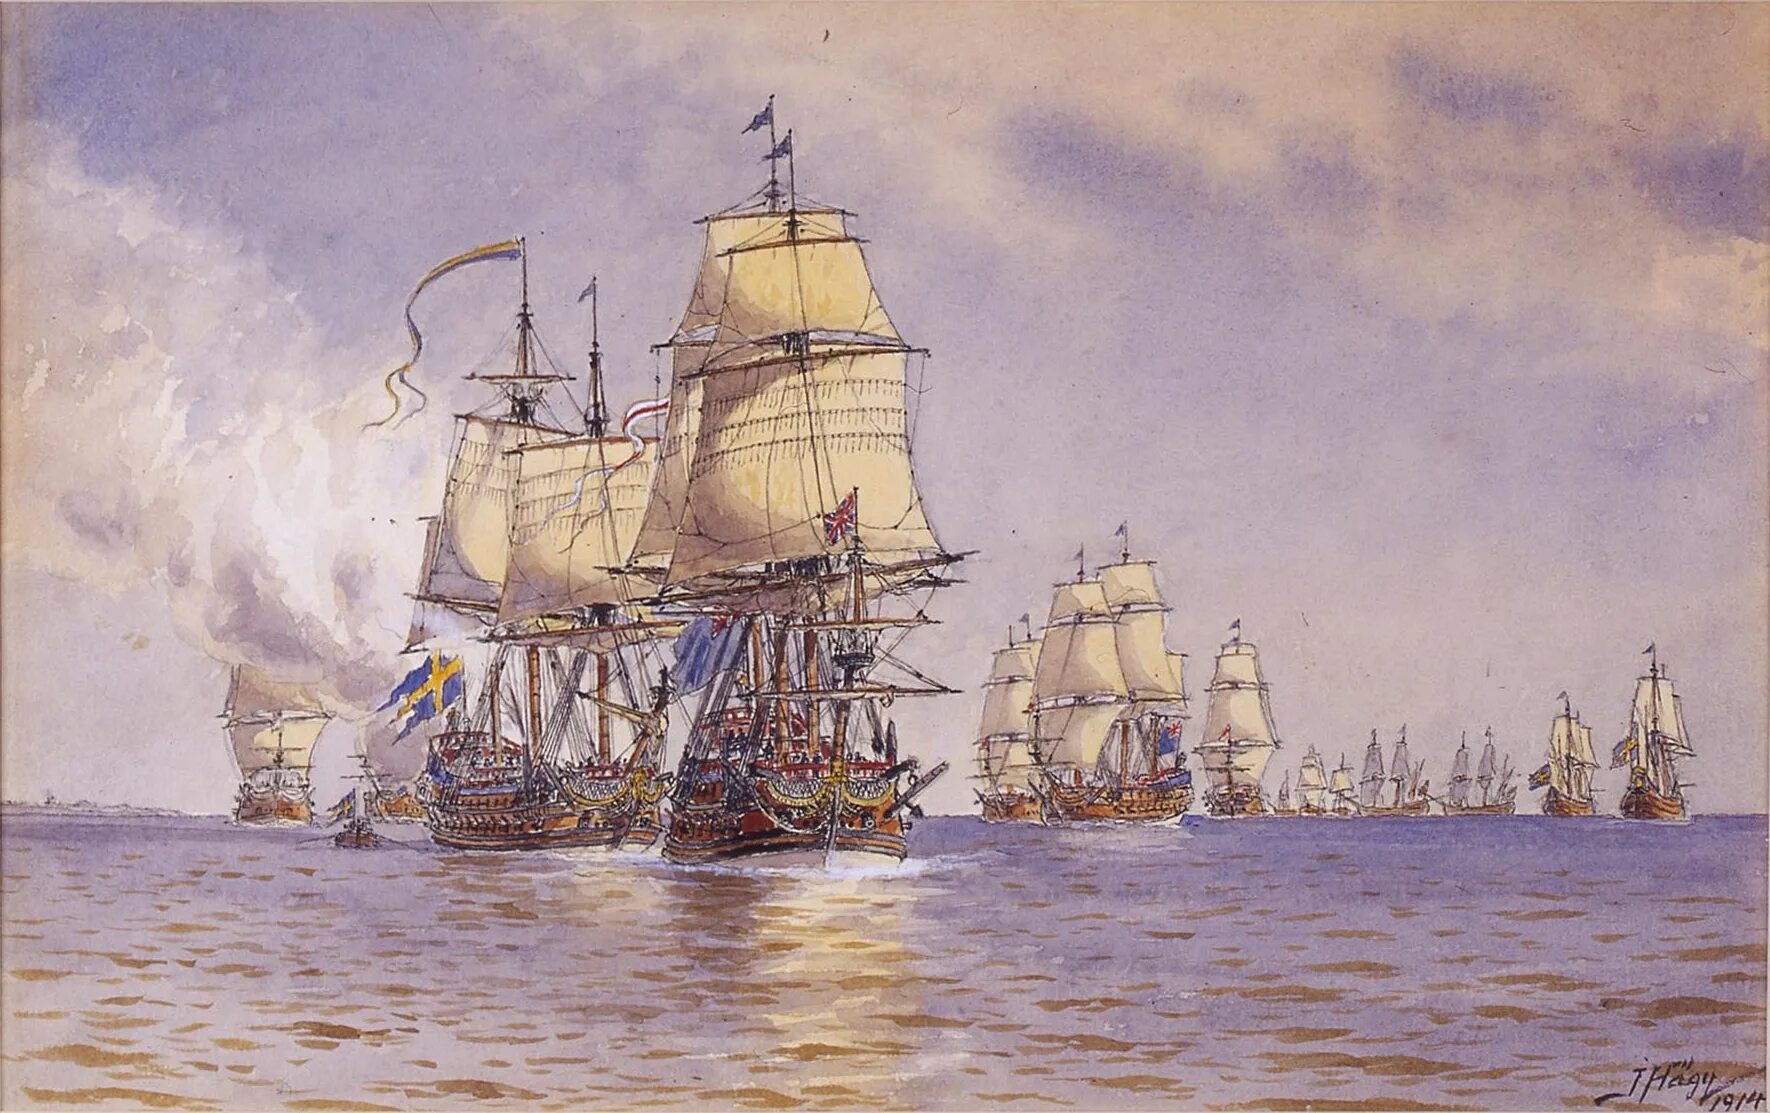 Гогландское сражение 1788. Бой у острова Эзель 24 мая 1719 года. Парусный линейный корабль Кайзер 1858. Якоб Хагг.